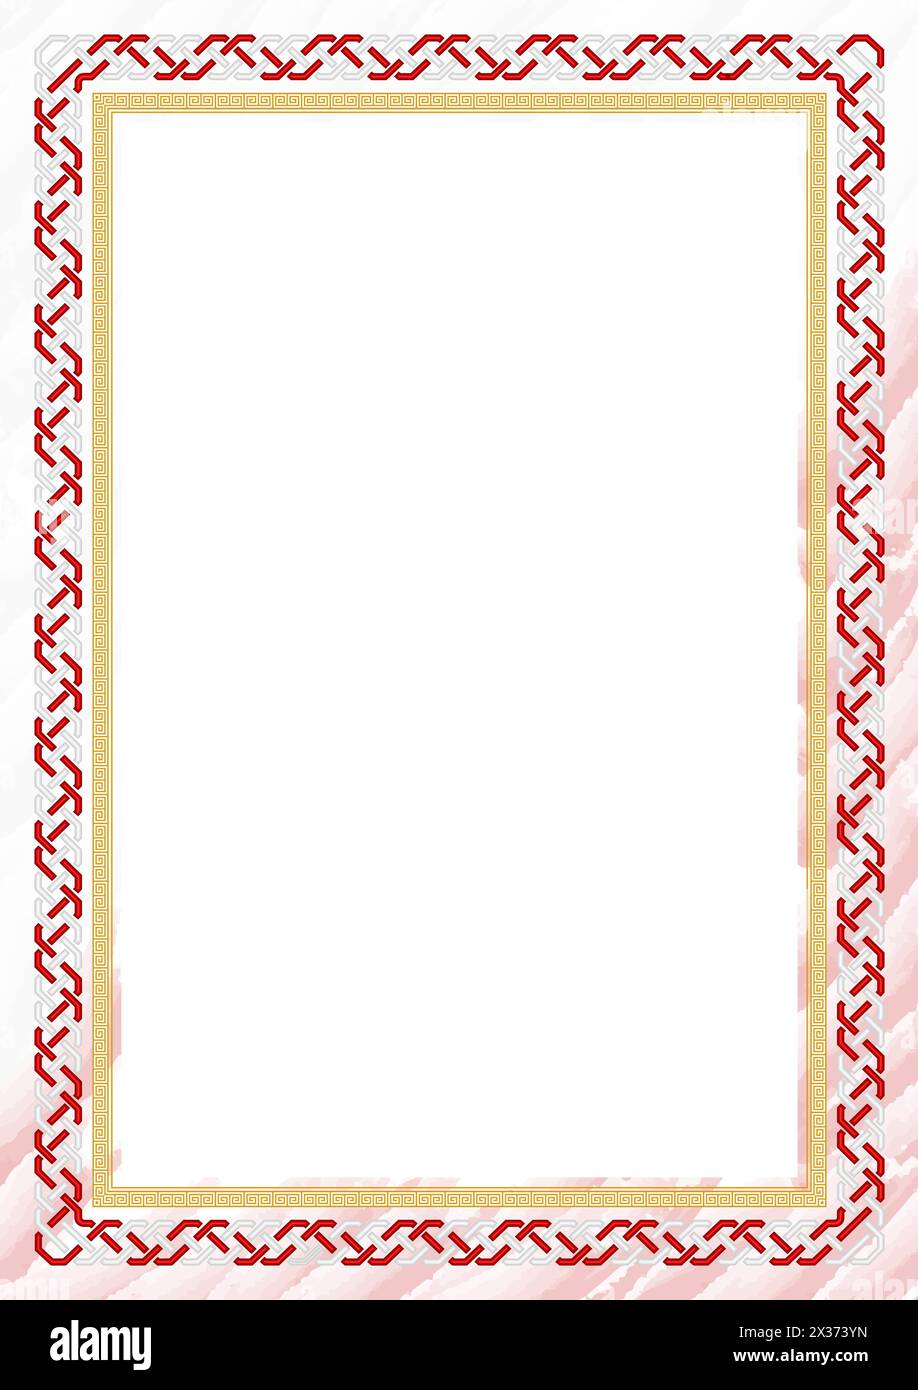 Vertikaler Rahmen und Rahmen mit Farben der Tonga-Flagge, Vorlagenelemente für Ihr Zeugnis und Ihren Abschluss. Vektor. Stock Vektor